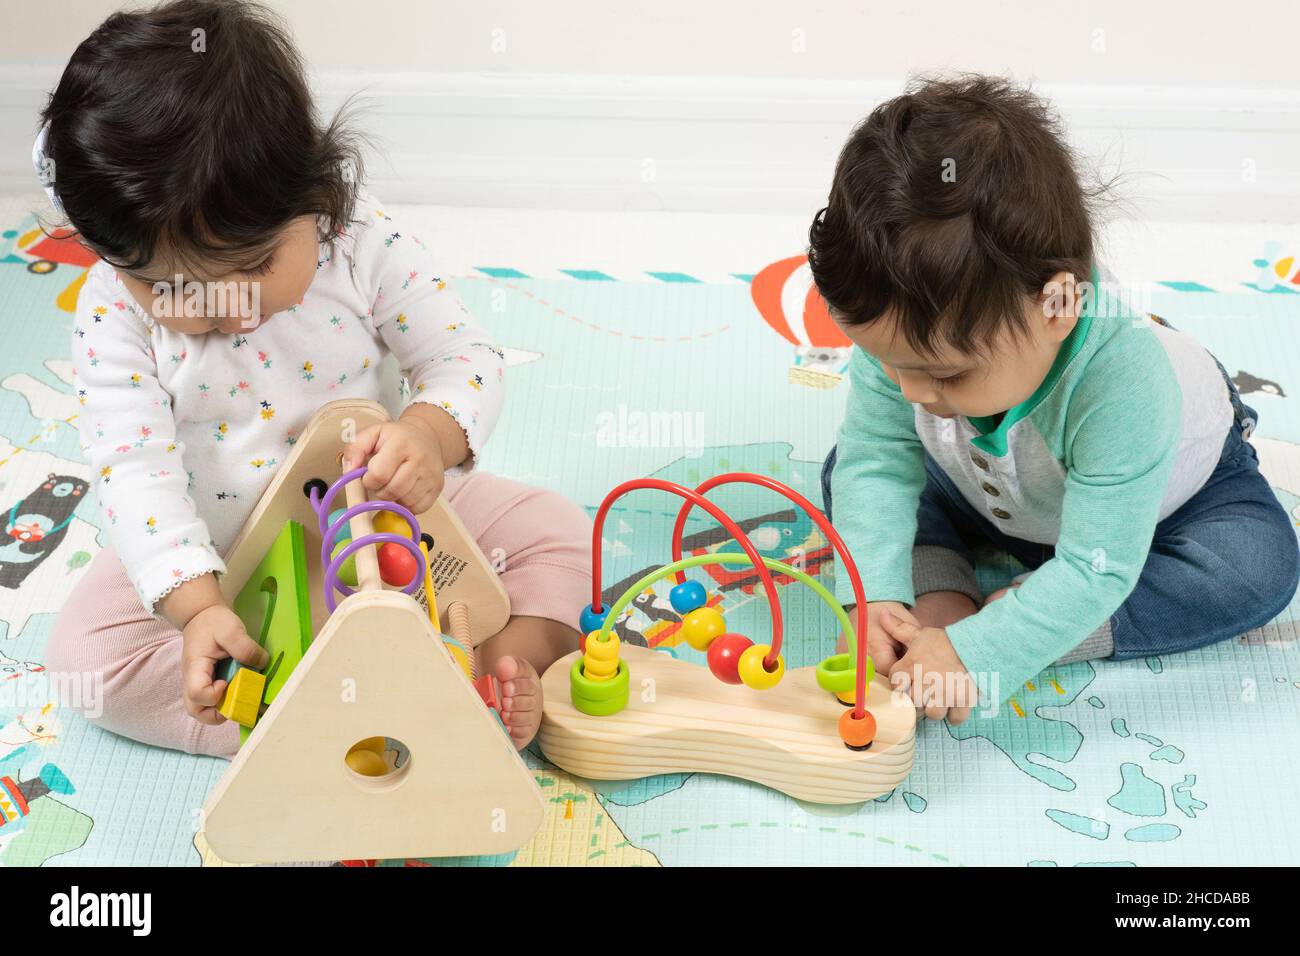 bebés gemelos fraternos de 8 meses sentados cerca unos de otros, ambos jugando con juguetes Foto de stock